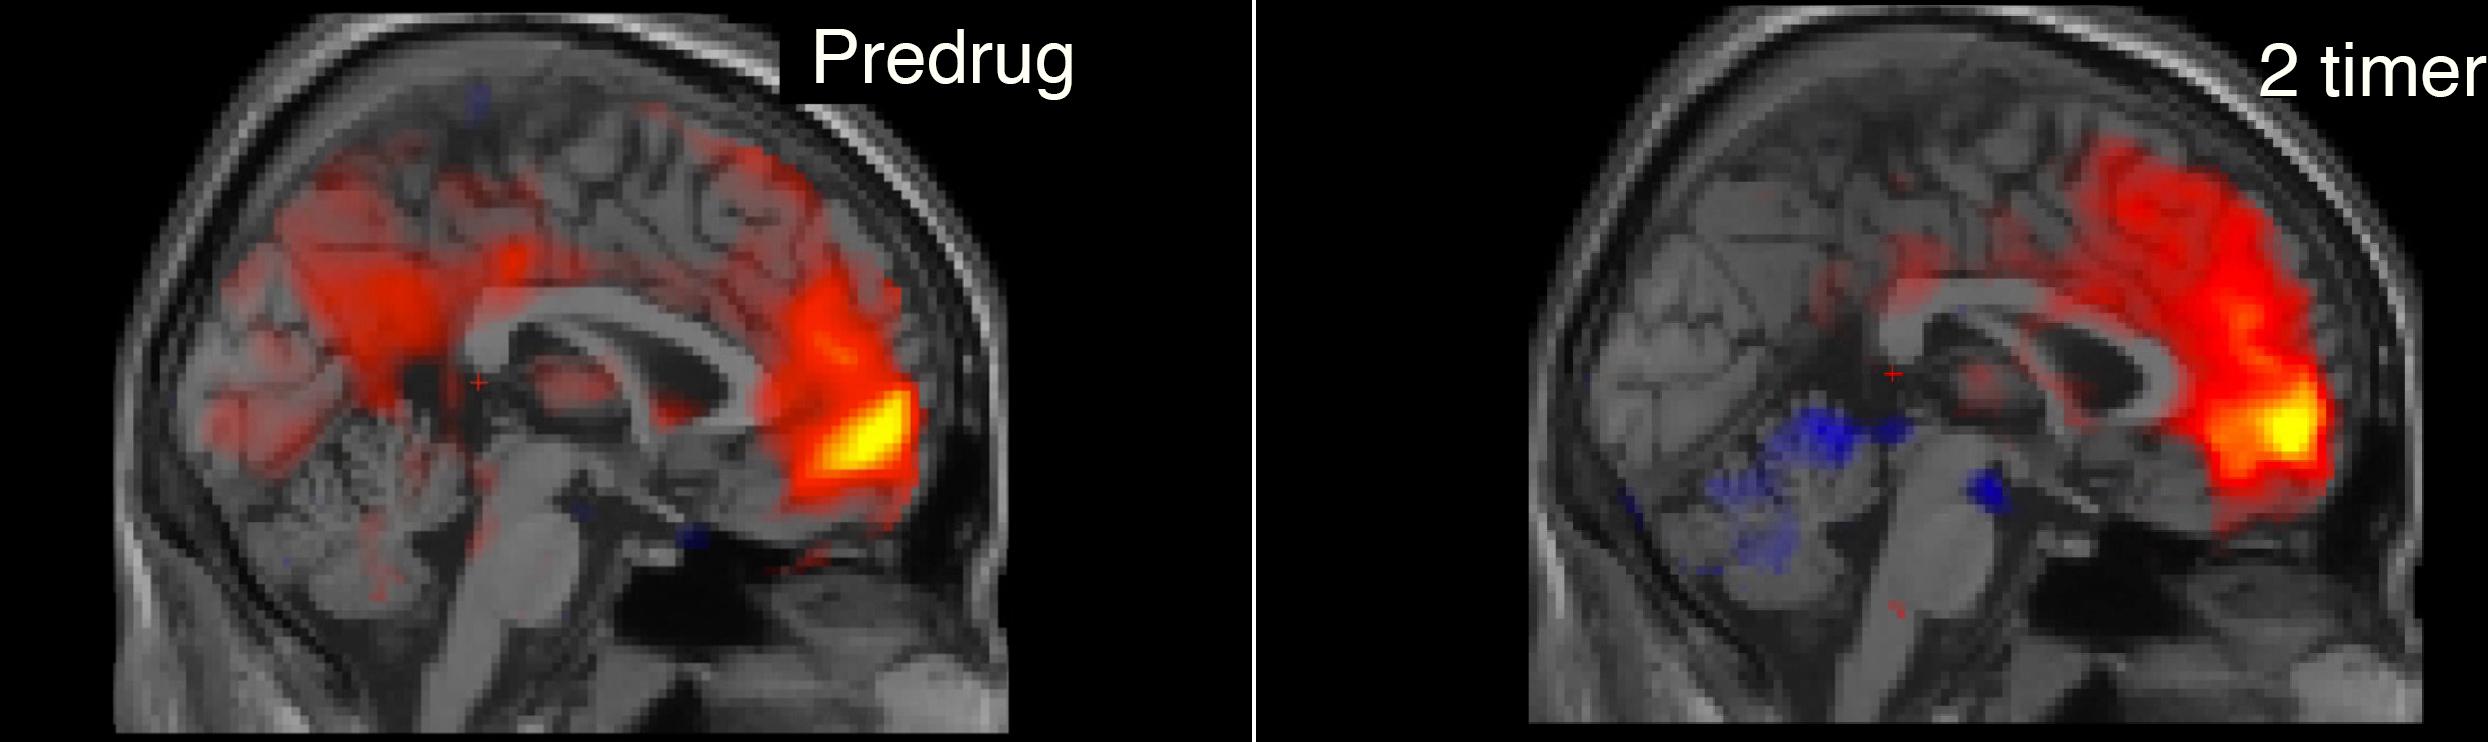 Tv.: fMRI-billedet viser funktionel konnektivitet mellem den mediale præfrontale cortex (MPFC) og resten af hjernen før indgift af psilocybin. Den røde farve i den posteriore cingulate cortex (PCC), viser positiv funktionel konnektivitet med MPFC. Th.: Funktionel konnektivitet for samme forsøgsperson to timer efter 18 mg psilocybin. Fraværet af rød farve i PCC viser markant nedsat funktionel konnektivitet med MPFC. MPFC og PCC er kernestrukturer i default-mode netværk, der er relateret til bla jegoplevelse.